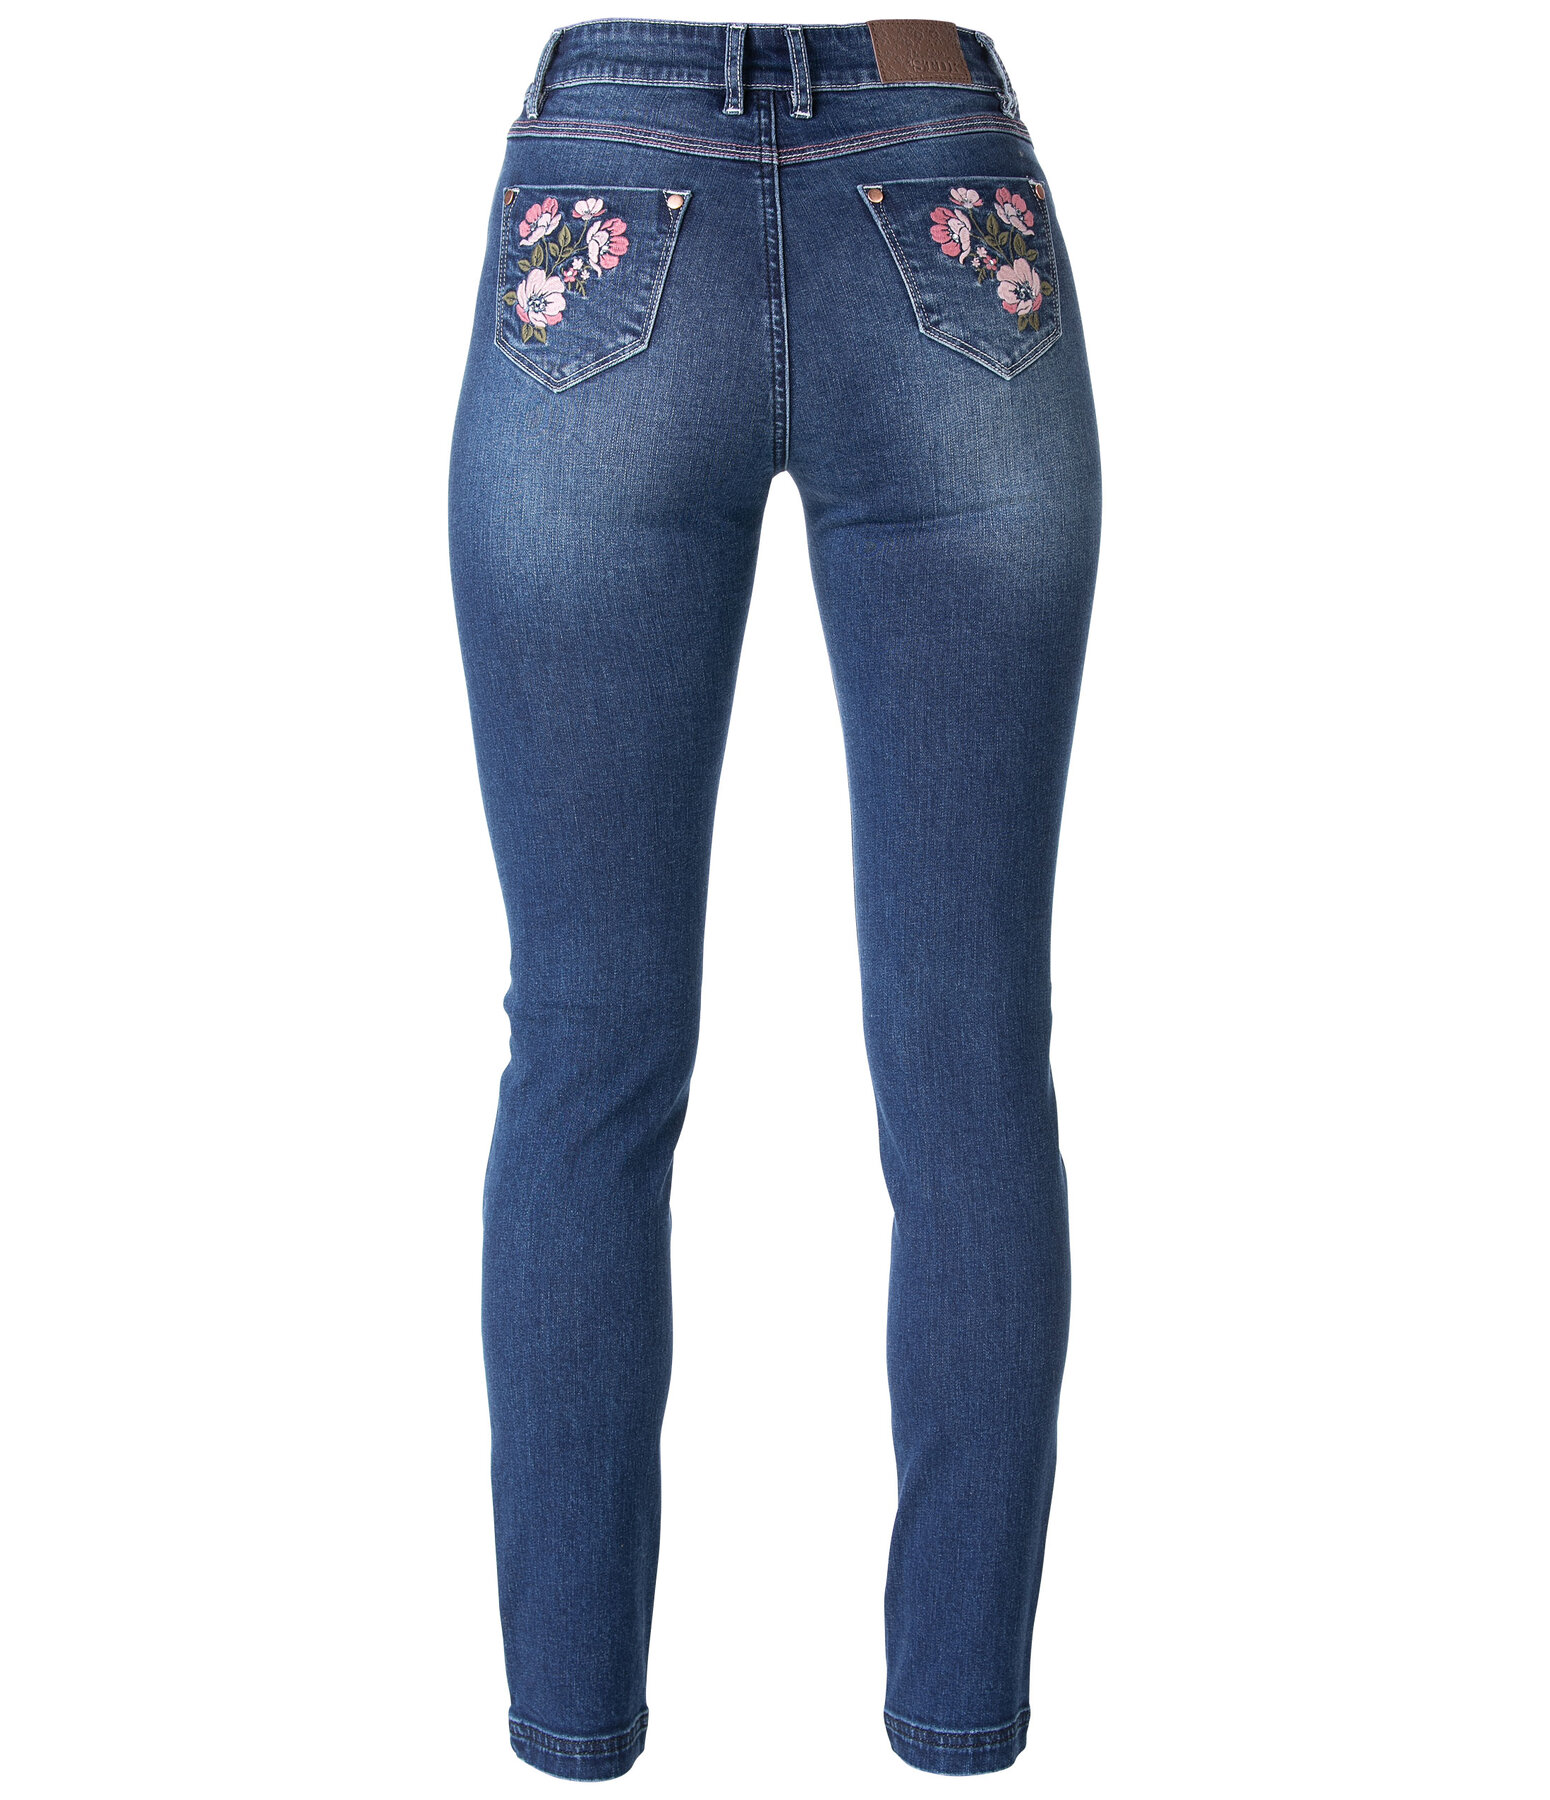 Jeans Floral Heaven Length 32